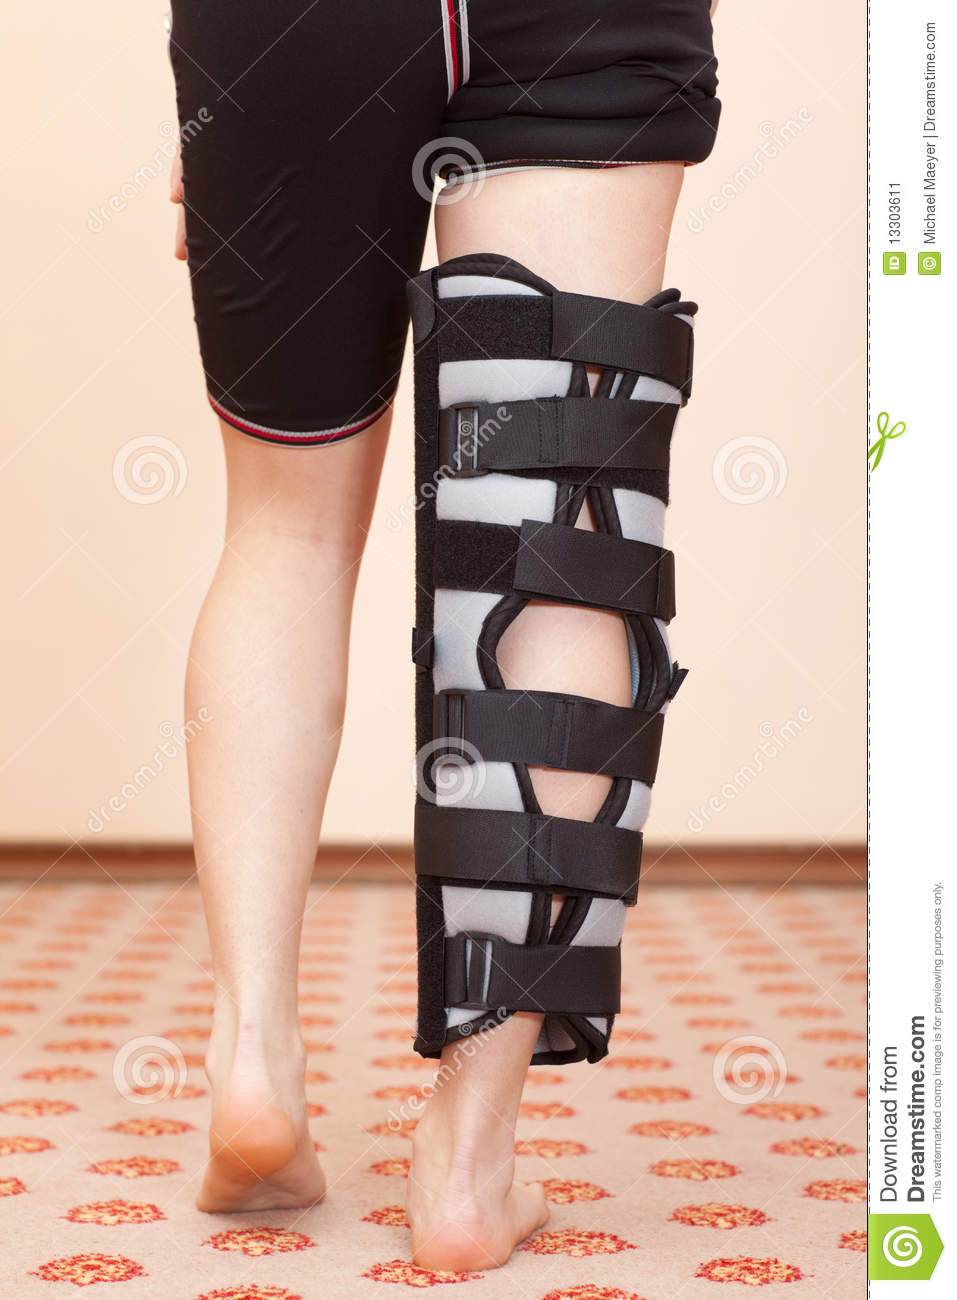 Leg Injury Stock Image   Image  13303611